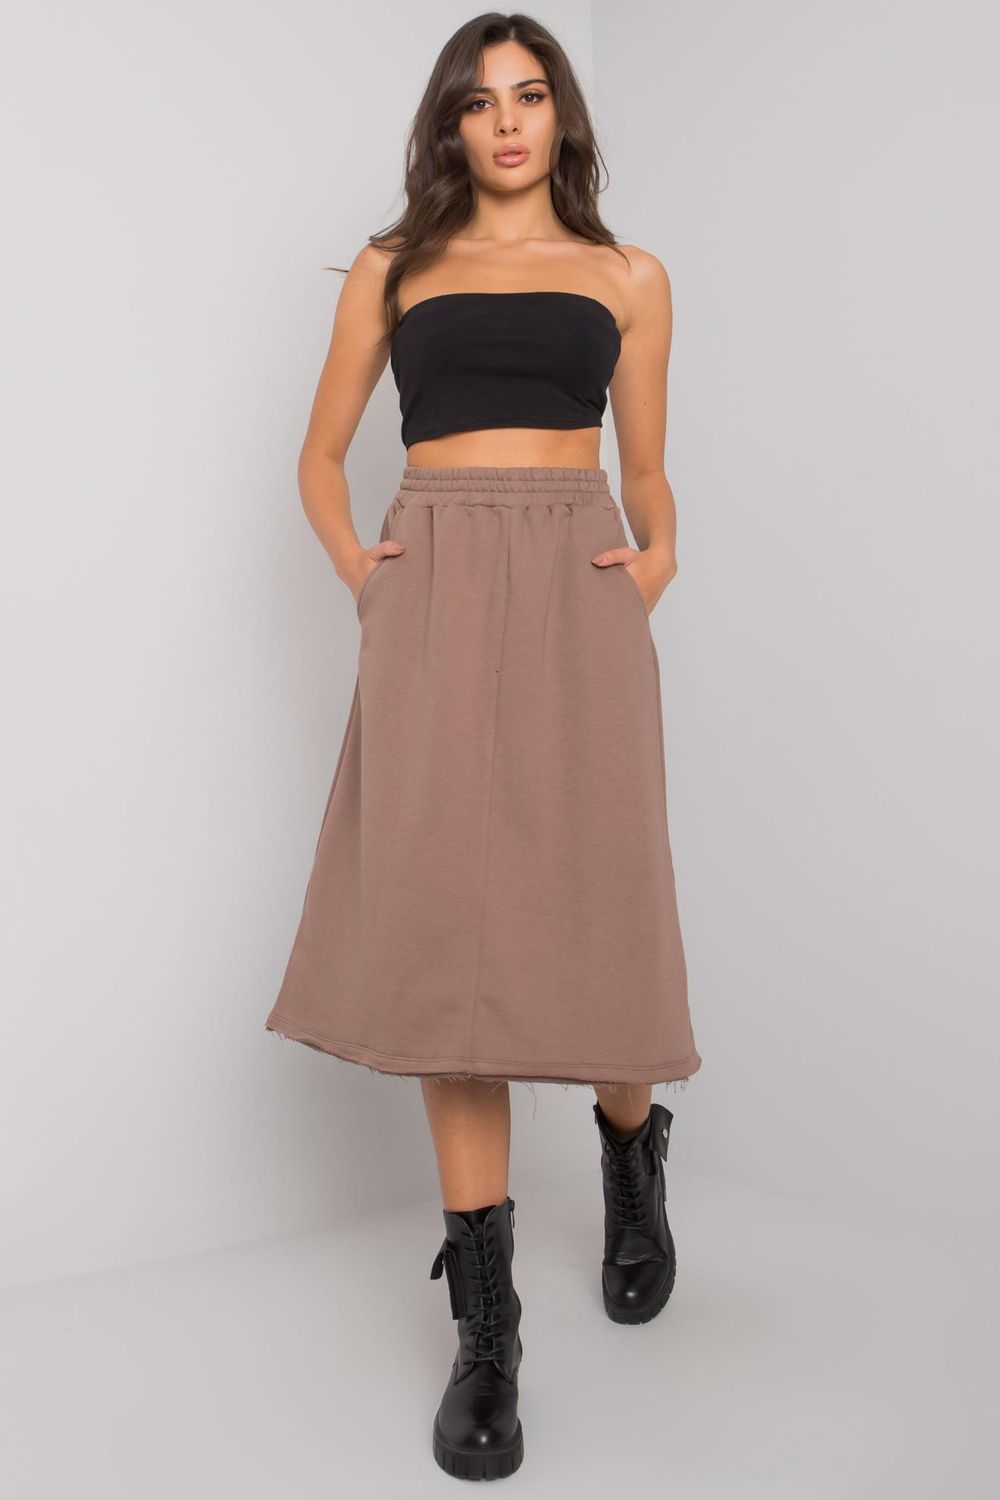  Skirt model 167148 BFG  brown